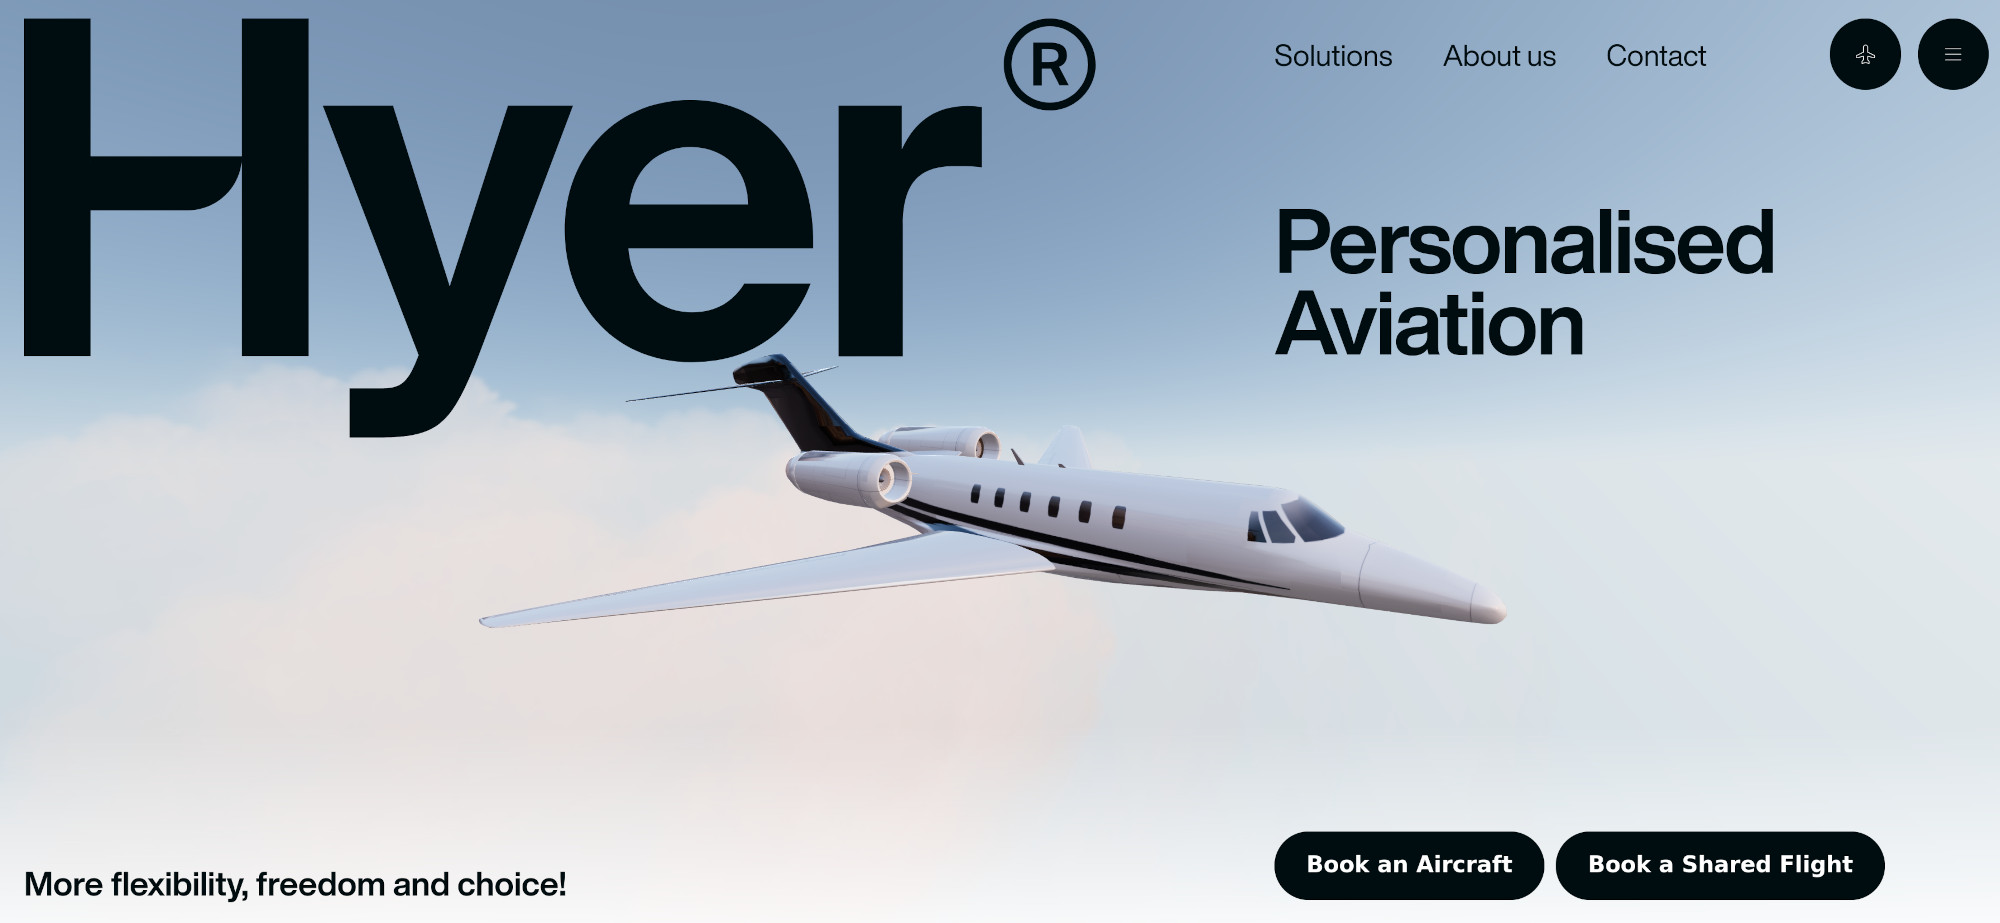 Ein Screenshot von www.flyhyer.com mit dem Hyher-Logo in der oberen rechten Ecke, einem Bild eines kleinen Flugzeugs auf blauem Himmelshintergrund in der Mitte und verschiedenen schwarzen Navigationselementen unten rechts und oben rechts.